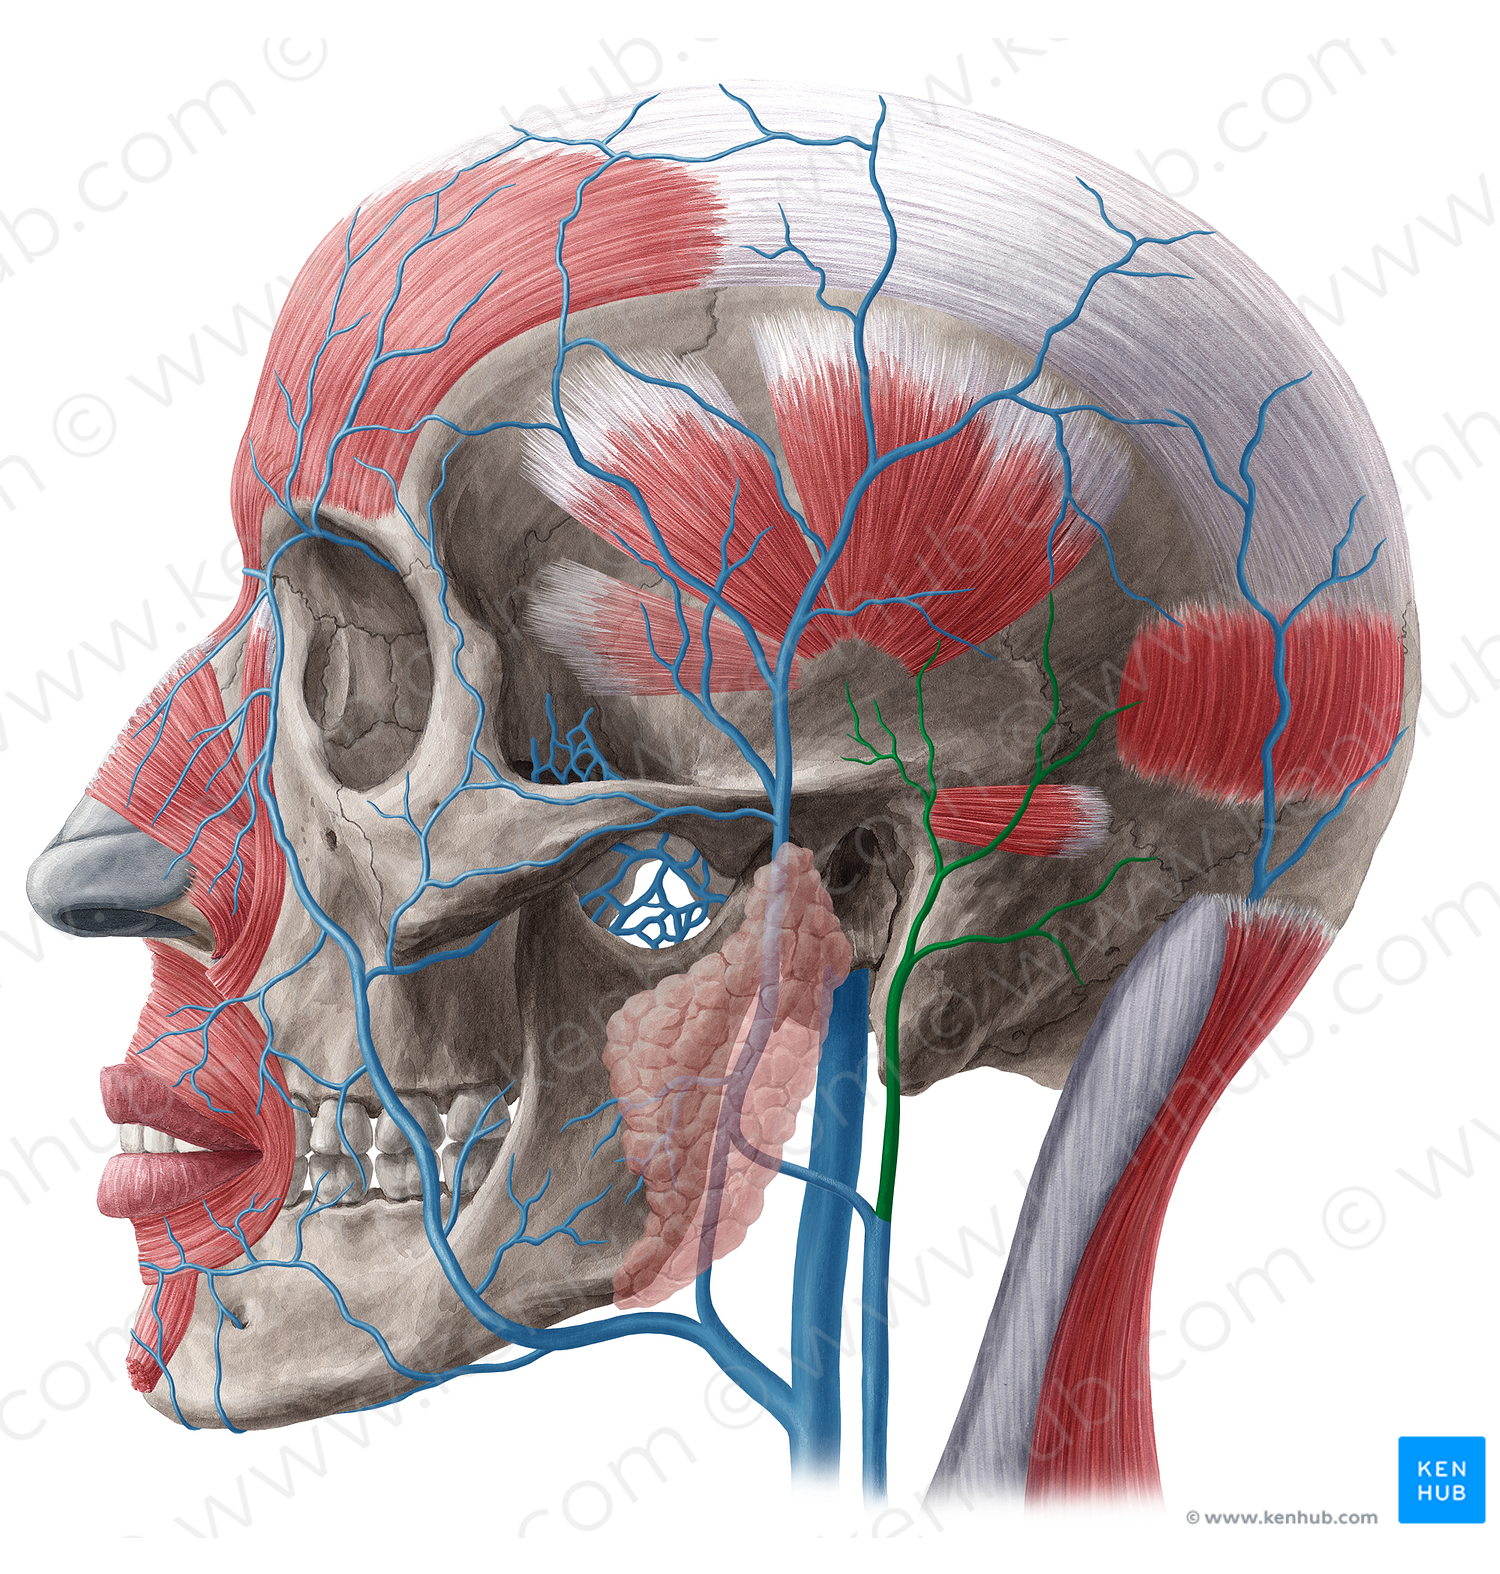 Posterior auricular vein (#9959)